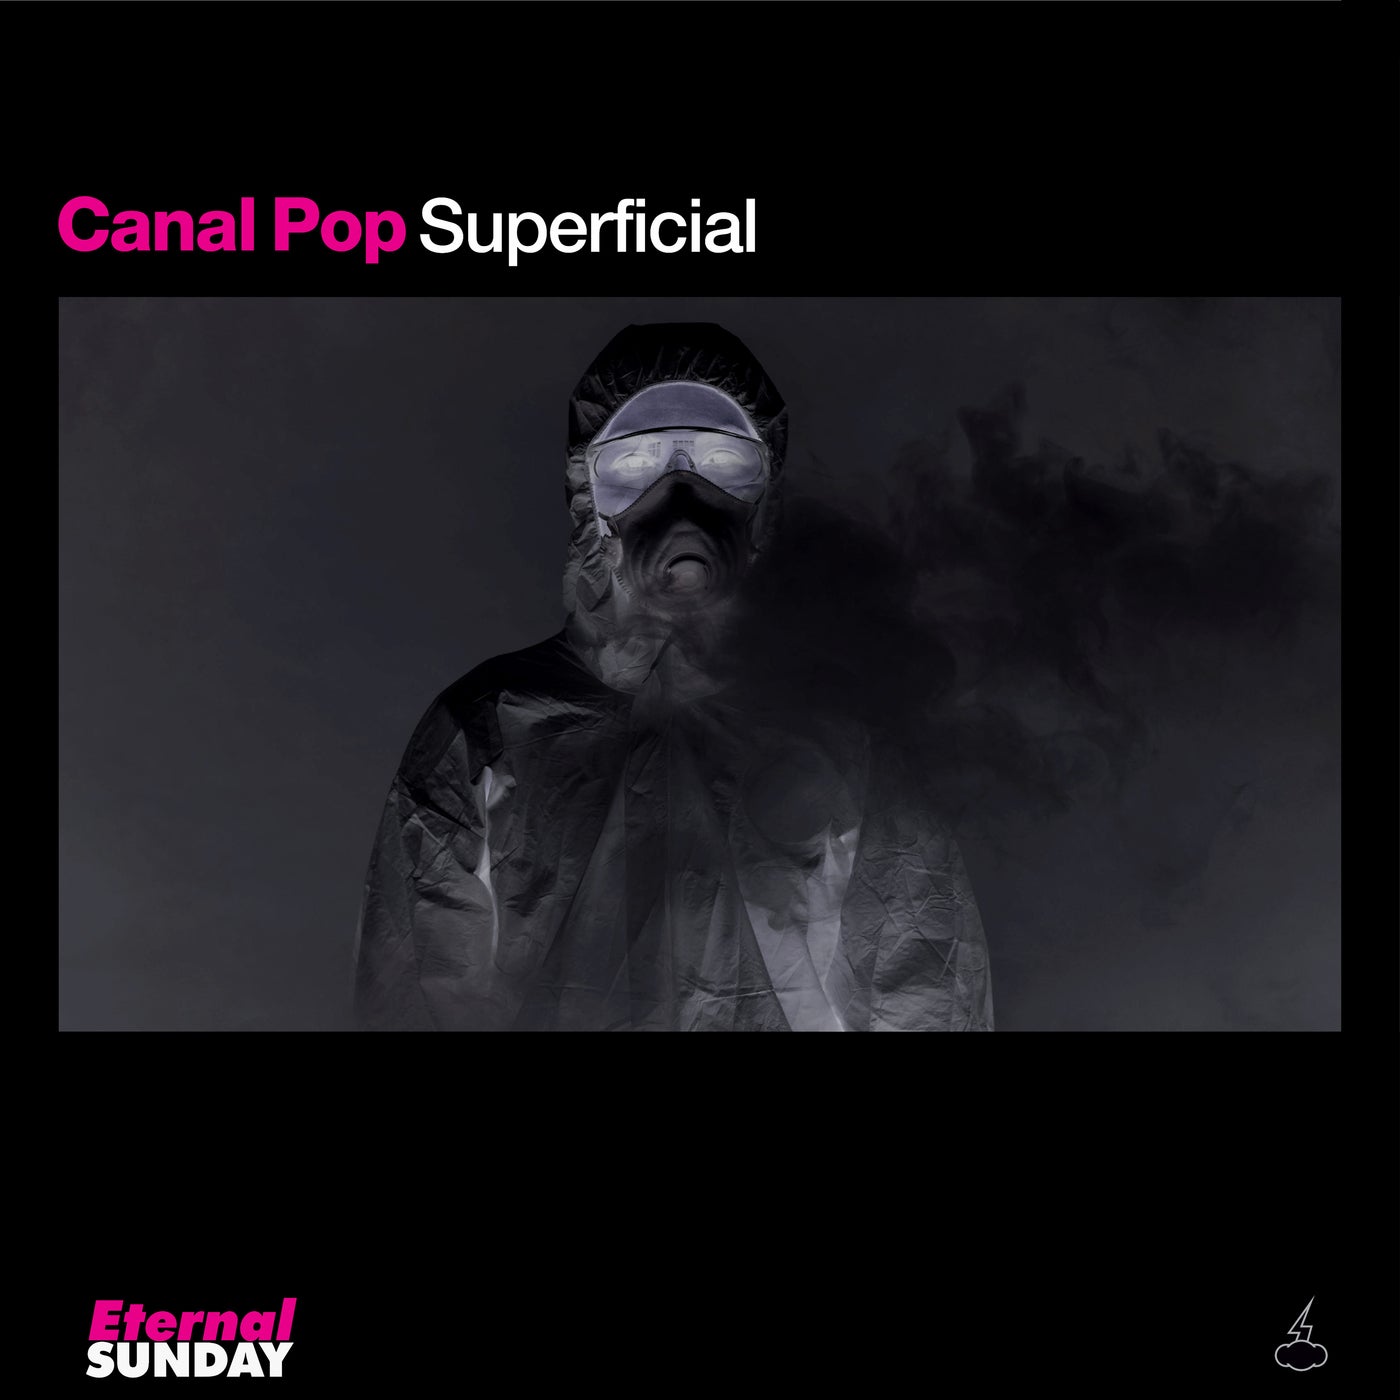 Canal pop lokotorrents cdma evolution torrent